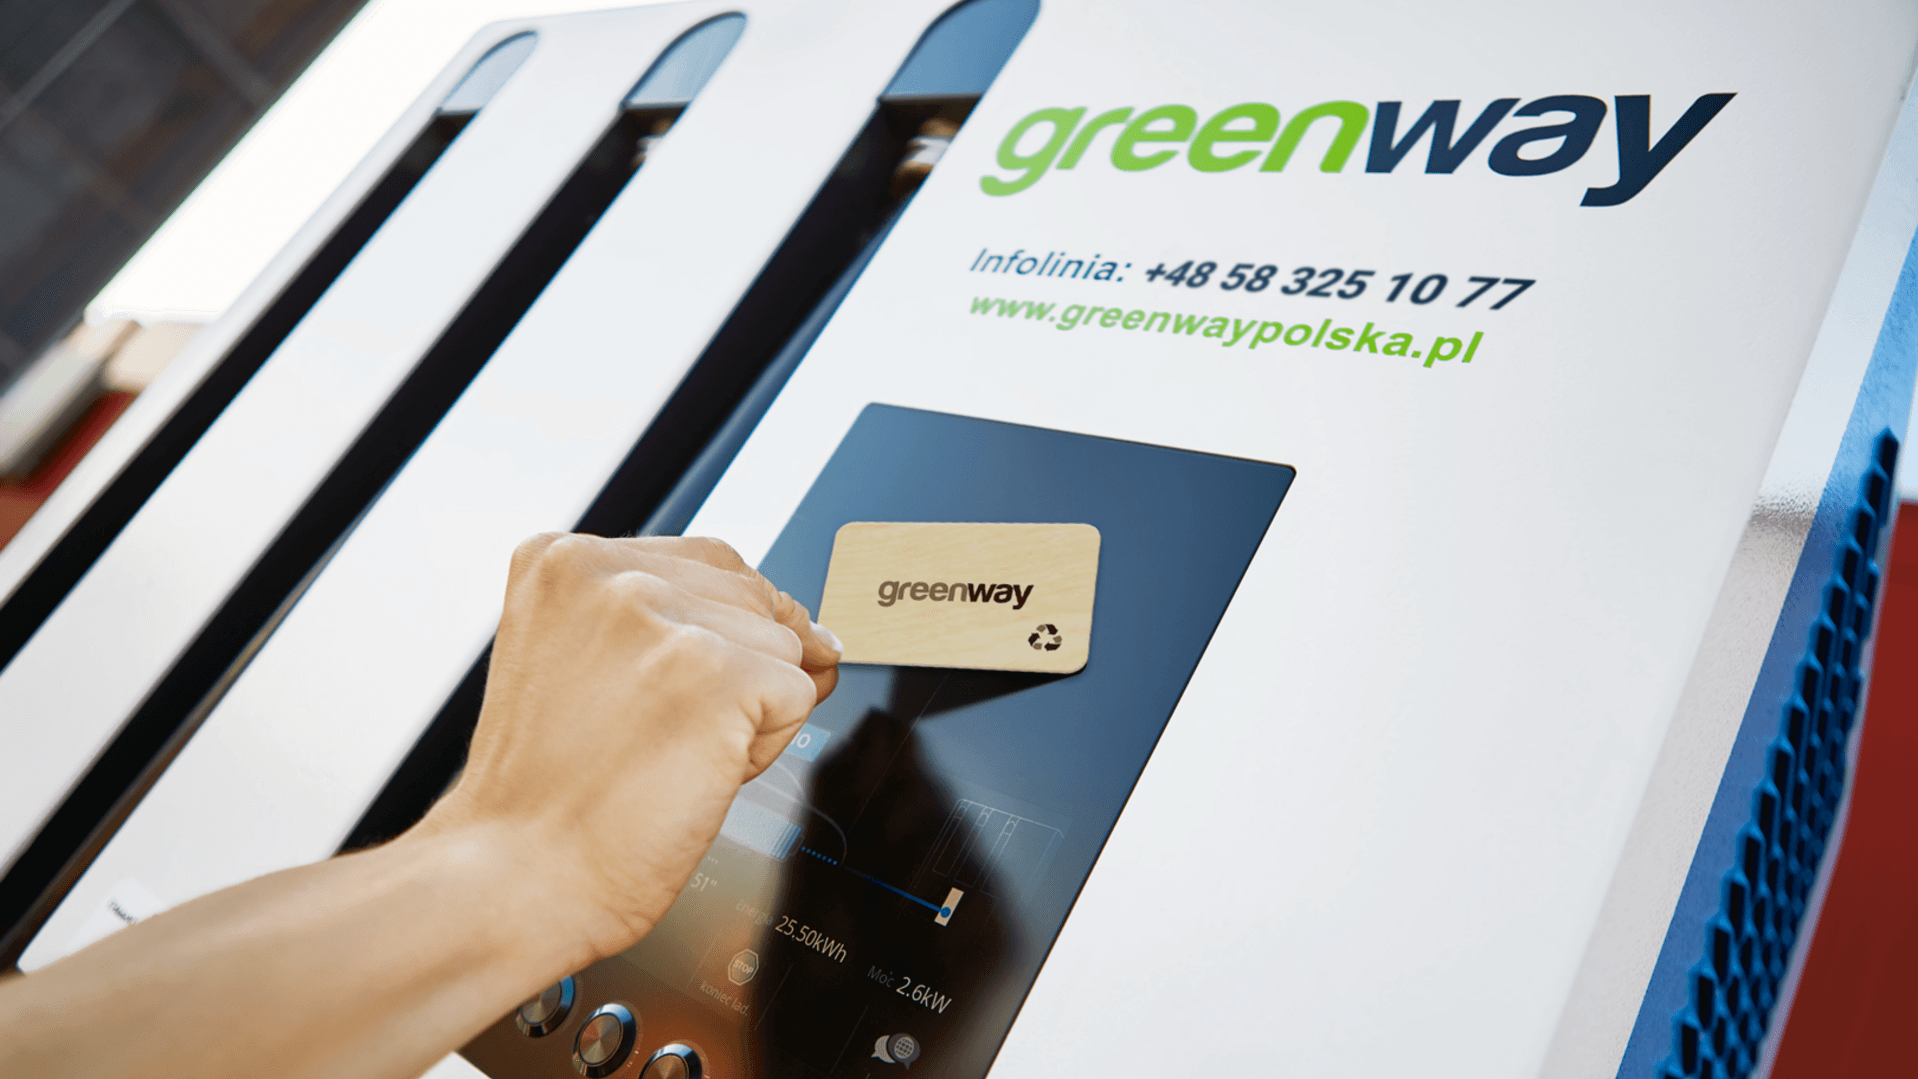 
Opis Partnera
GreenWay to największa publiczna sieć ładowania pojazdów elektrycznych w regionie CEE. Sieć spółki w Polsce liczy niemal pół tysiąca stacji. Rejestracja w sieci GreenWay umożliwia swobodną podróż po Polsce, Słowacji i reszcie Europy za pomocą karty GreenWay, mobilnej aplikacji oraz Portalu Klienta dostępnego na stronie internetowej greenwaypolska.pl.
Co zyskujesz?
15 kWh do wykorzystania na usługi ładowania w sieci GreenWay Polska dla posiadaczy abonamentu: Energia STANDARD
Jak skorzystać? - Kliknij przycisk "Użyj benefitu"
 - Skopiuj wyświetlony kod rabatowy
 - Zarejestruj się lub zaloguj do Portalu Klienta na stronie greenwaypolska.pl
 - Kliknij zakładkę „Rabaty” (w menu po lewej stronie)
 - Wklej kod rabatowy i naciśnij przycisk "Aktywuj rabat"

Data ważności: voucher ważny jest od momentu aktywacji na stronie greenwaypolska.pl do końca miesiąca, w którym został aktywowany.
Ważne: rabat nie jest naliczany na stacjach partnerskich i roamingowych GreenWay Polska i na jednym koncie kierowcy w aplikacji GreenWay można wykorzystać tylko jeden kod w miesiącu.